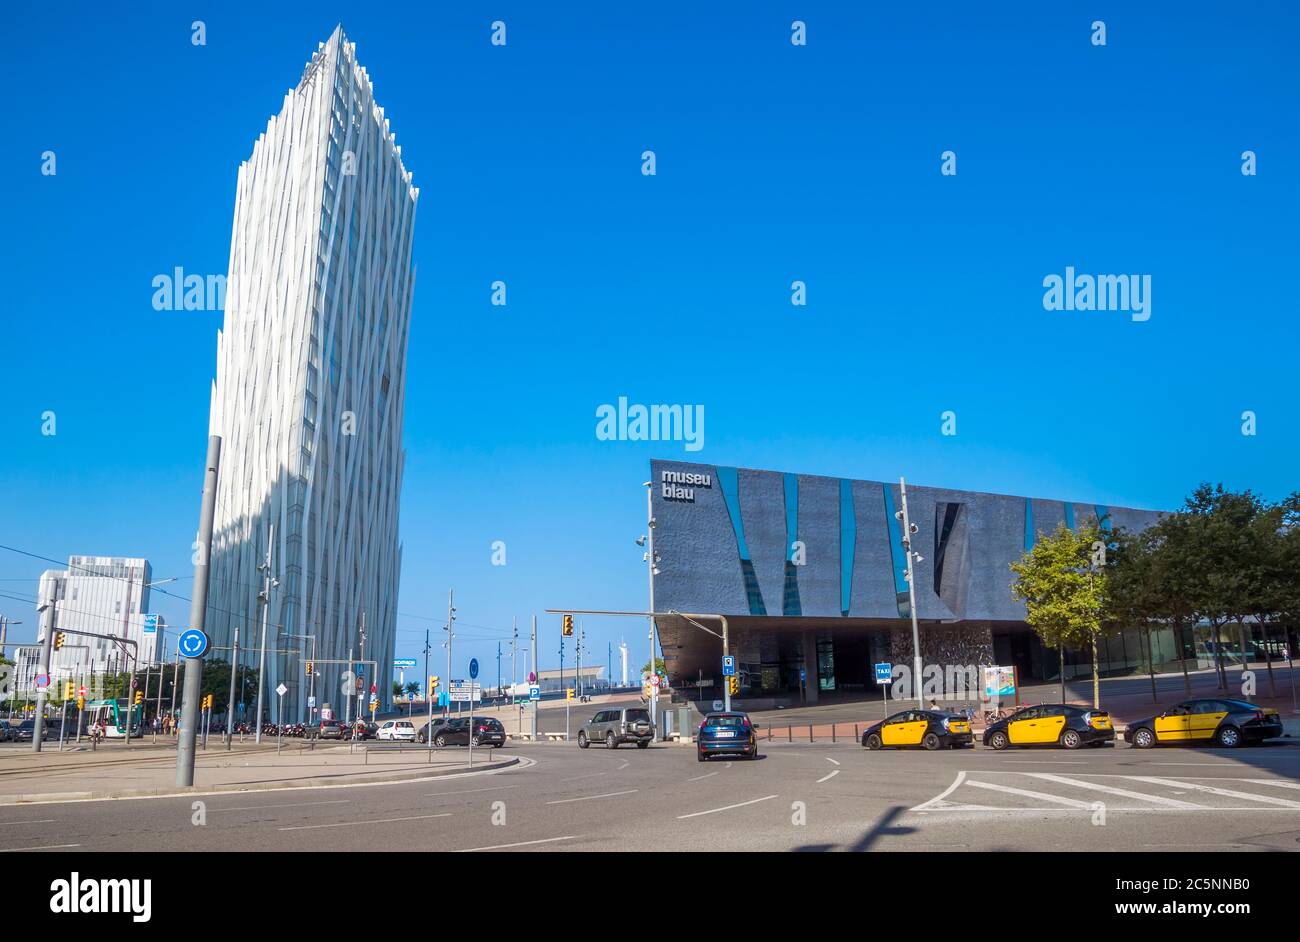 BARCELLONA, SPAGNA - 12 LUGLIO 2016: Nuova architettura moderna nella zona Diagonal Mar i el Front Maritim del Poblenou. Barcellona, Spagna - 12 luglio 2016: Foto Stock